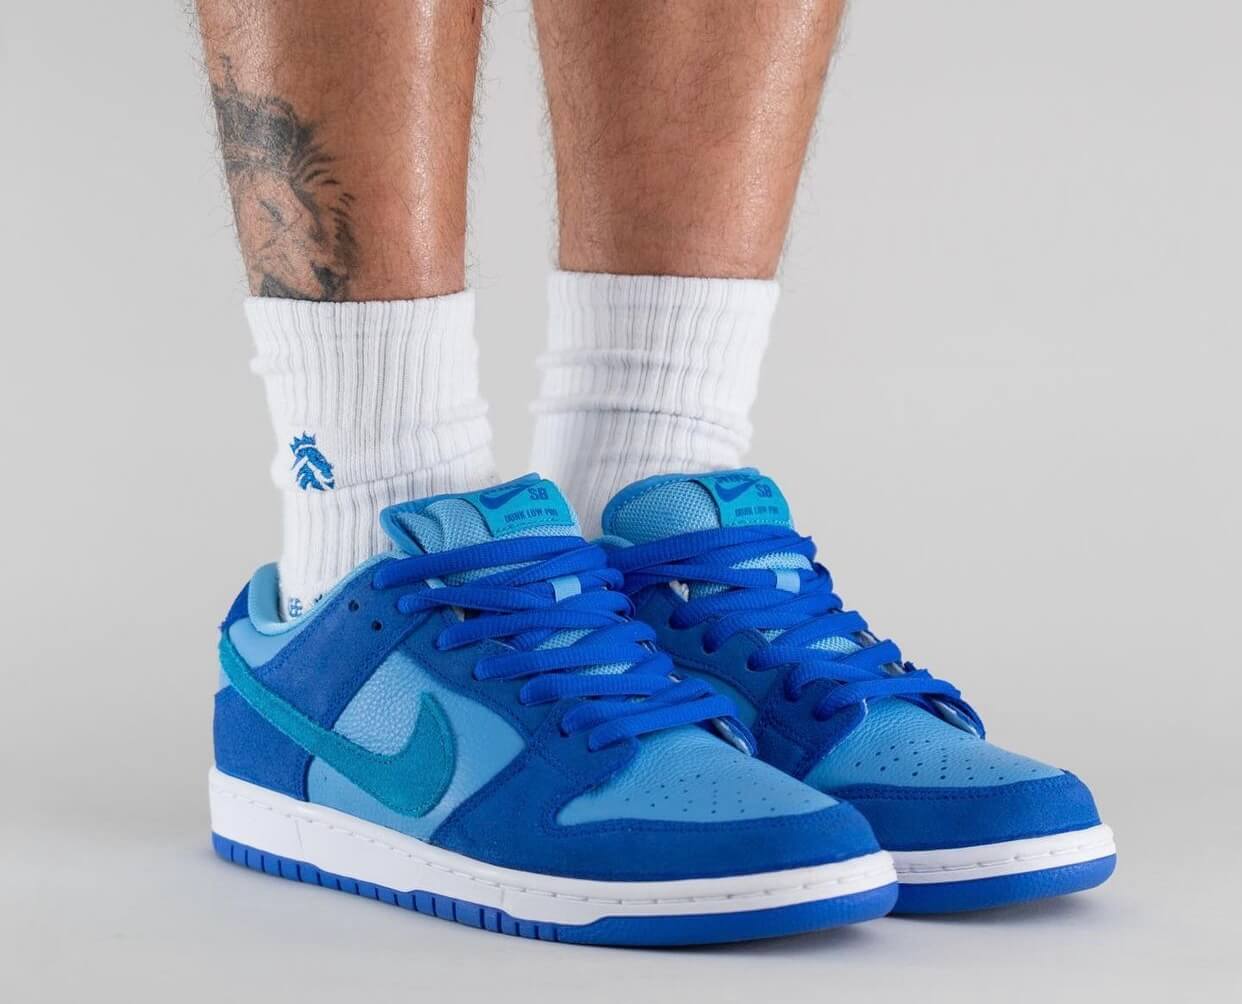 Nike SB Dunk Low “Blue Raspberry” – YankeeKicks Online